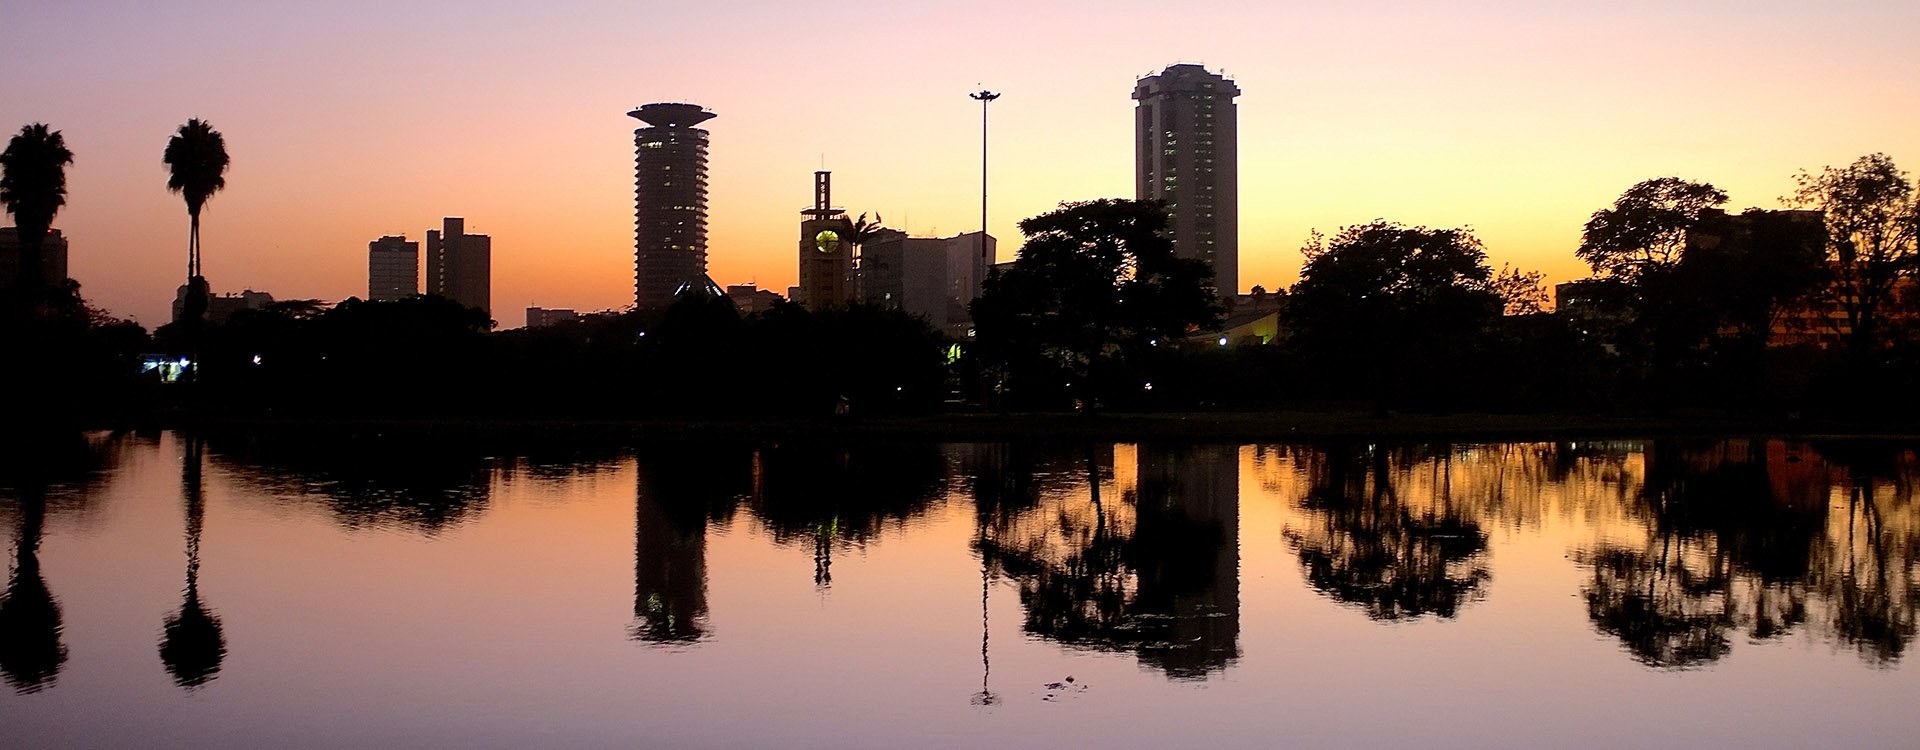 Nairobi skyline reflection